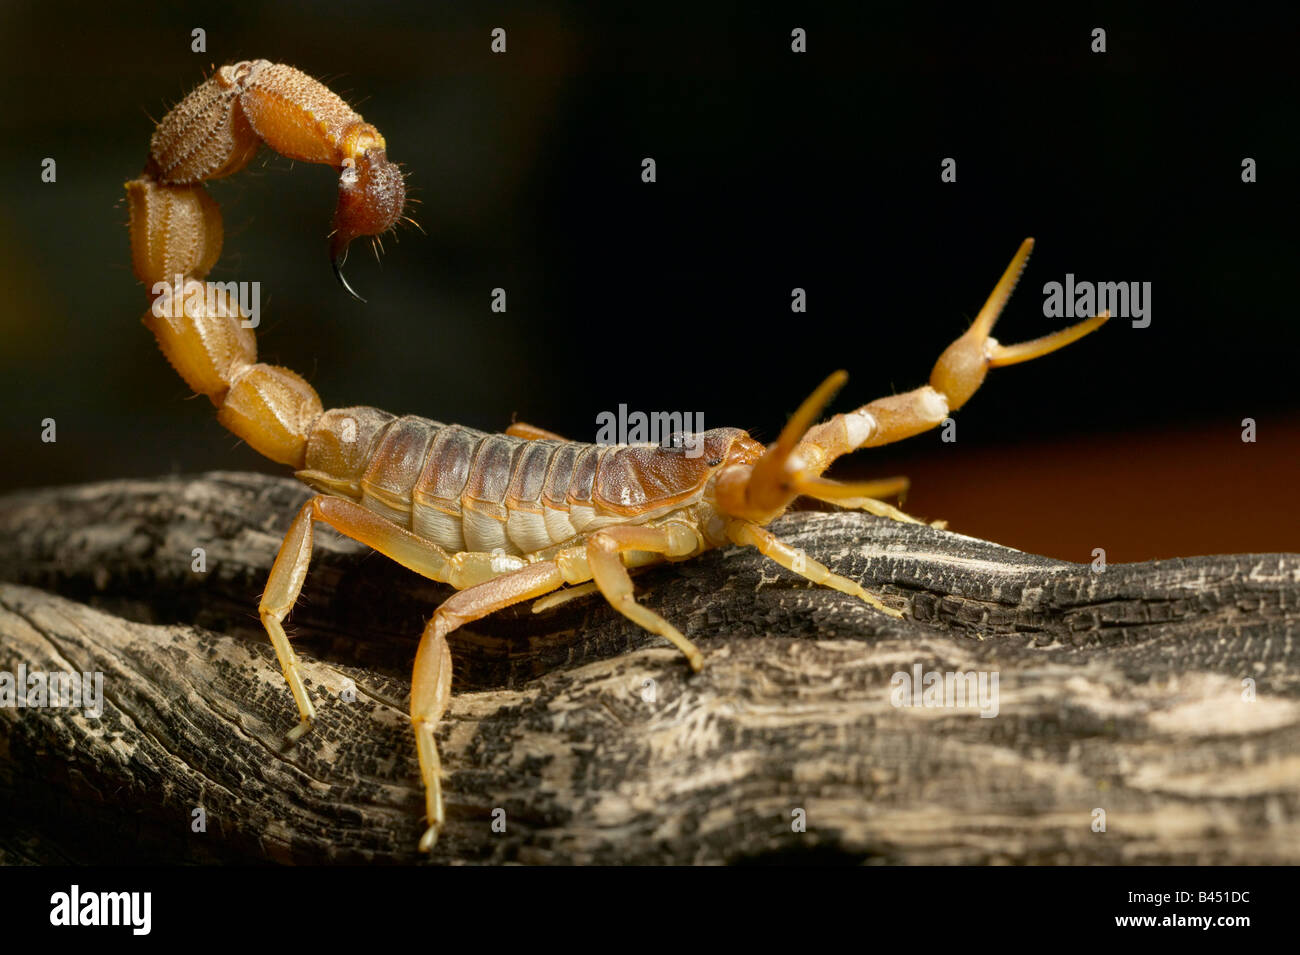 Cape cola gruesa Scorpion (Parabuthus capensis) altamente venenoso Foto de stock